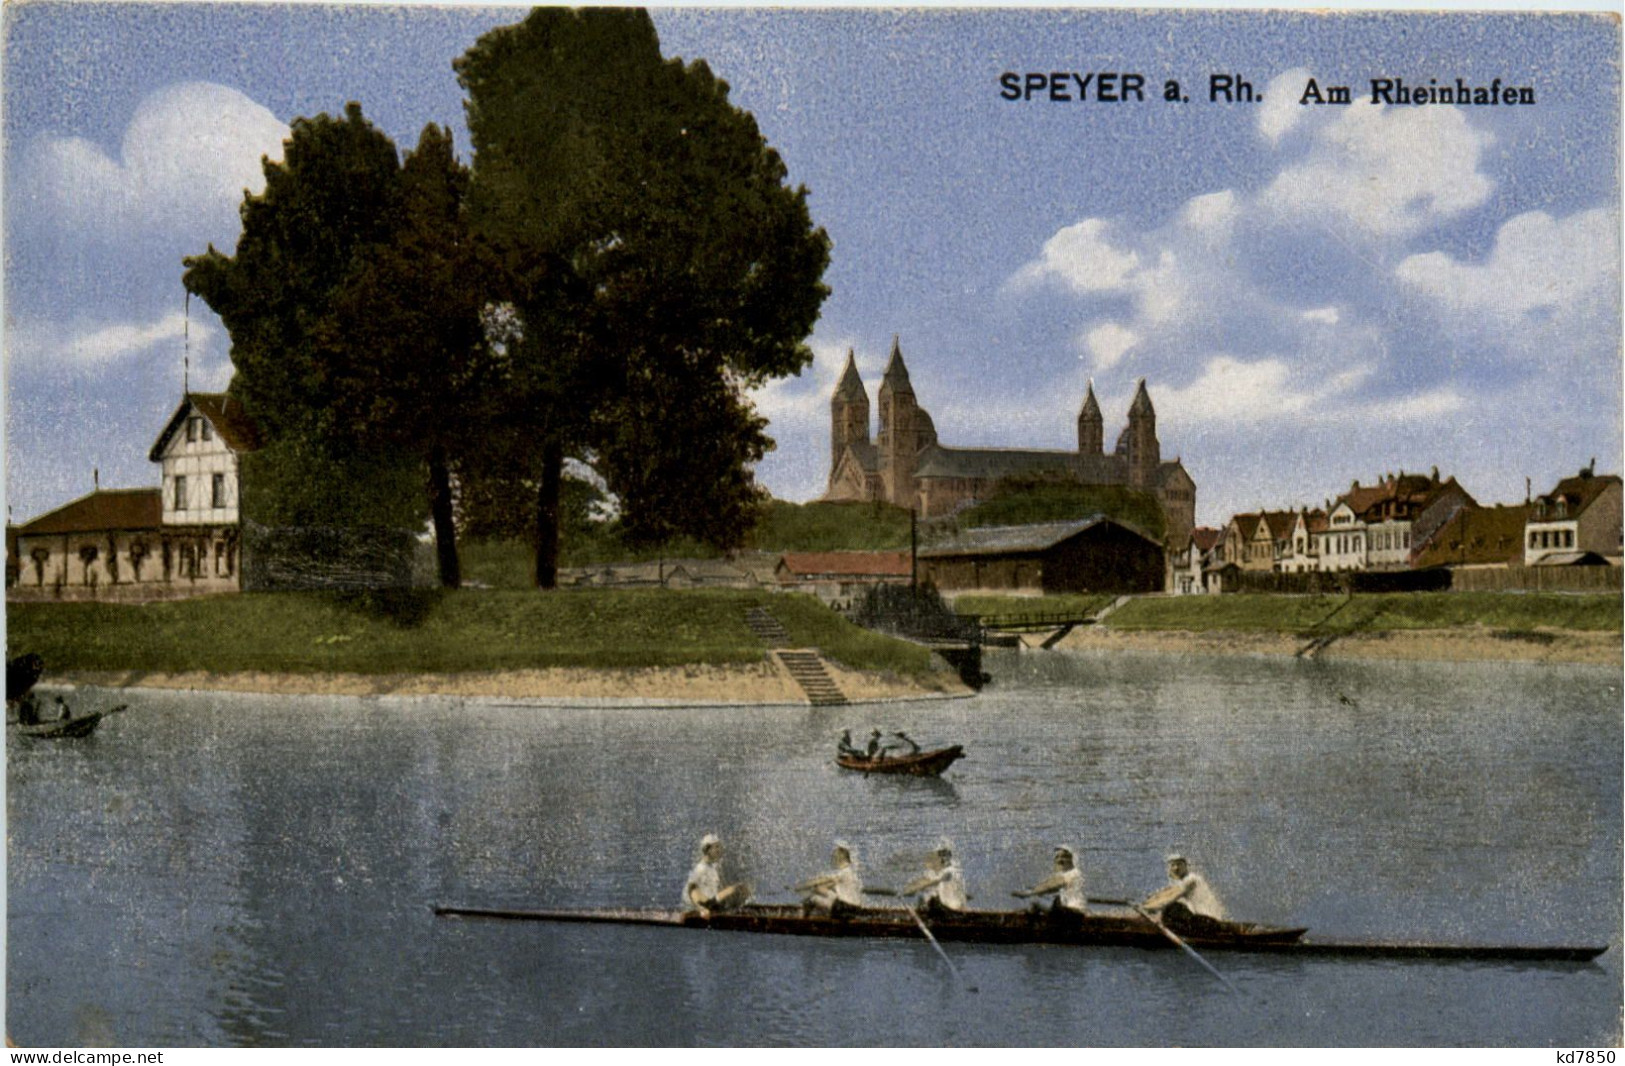 Speyer, Am Rheinhafen - Speyer